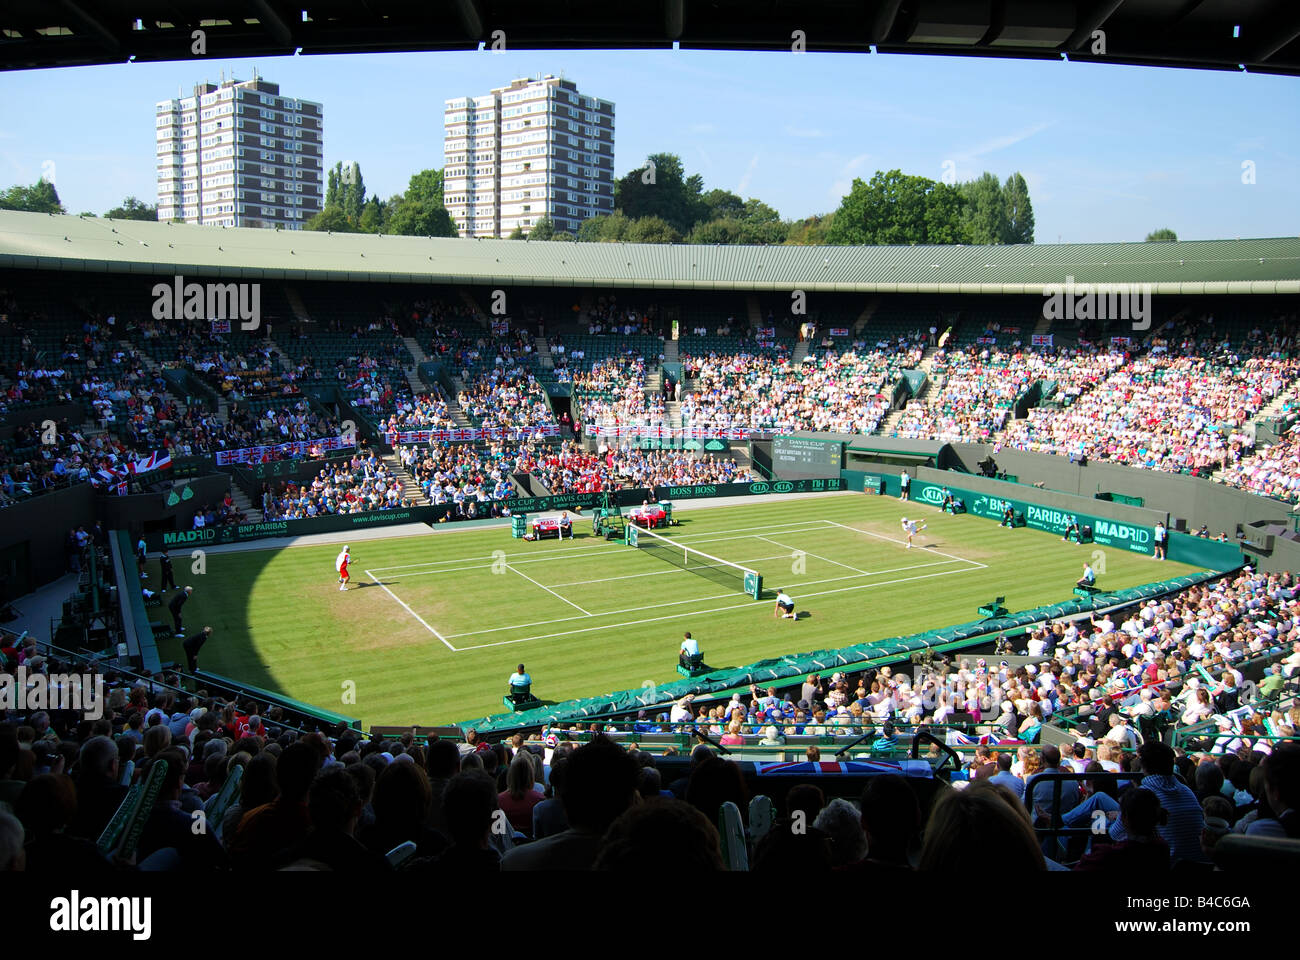 Davis-Cup-Spiel, Großbritannien gegen Österreich, Court One, Wimbledon Lawn Tennis Club, London Borough of Merton, Greater London, England, Vereinigtes Königreich Stockfoto